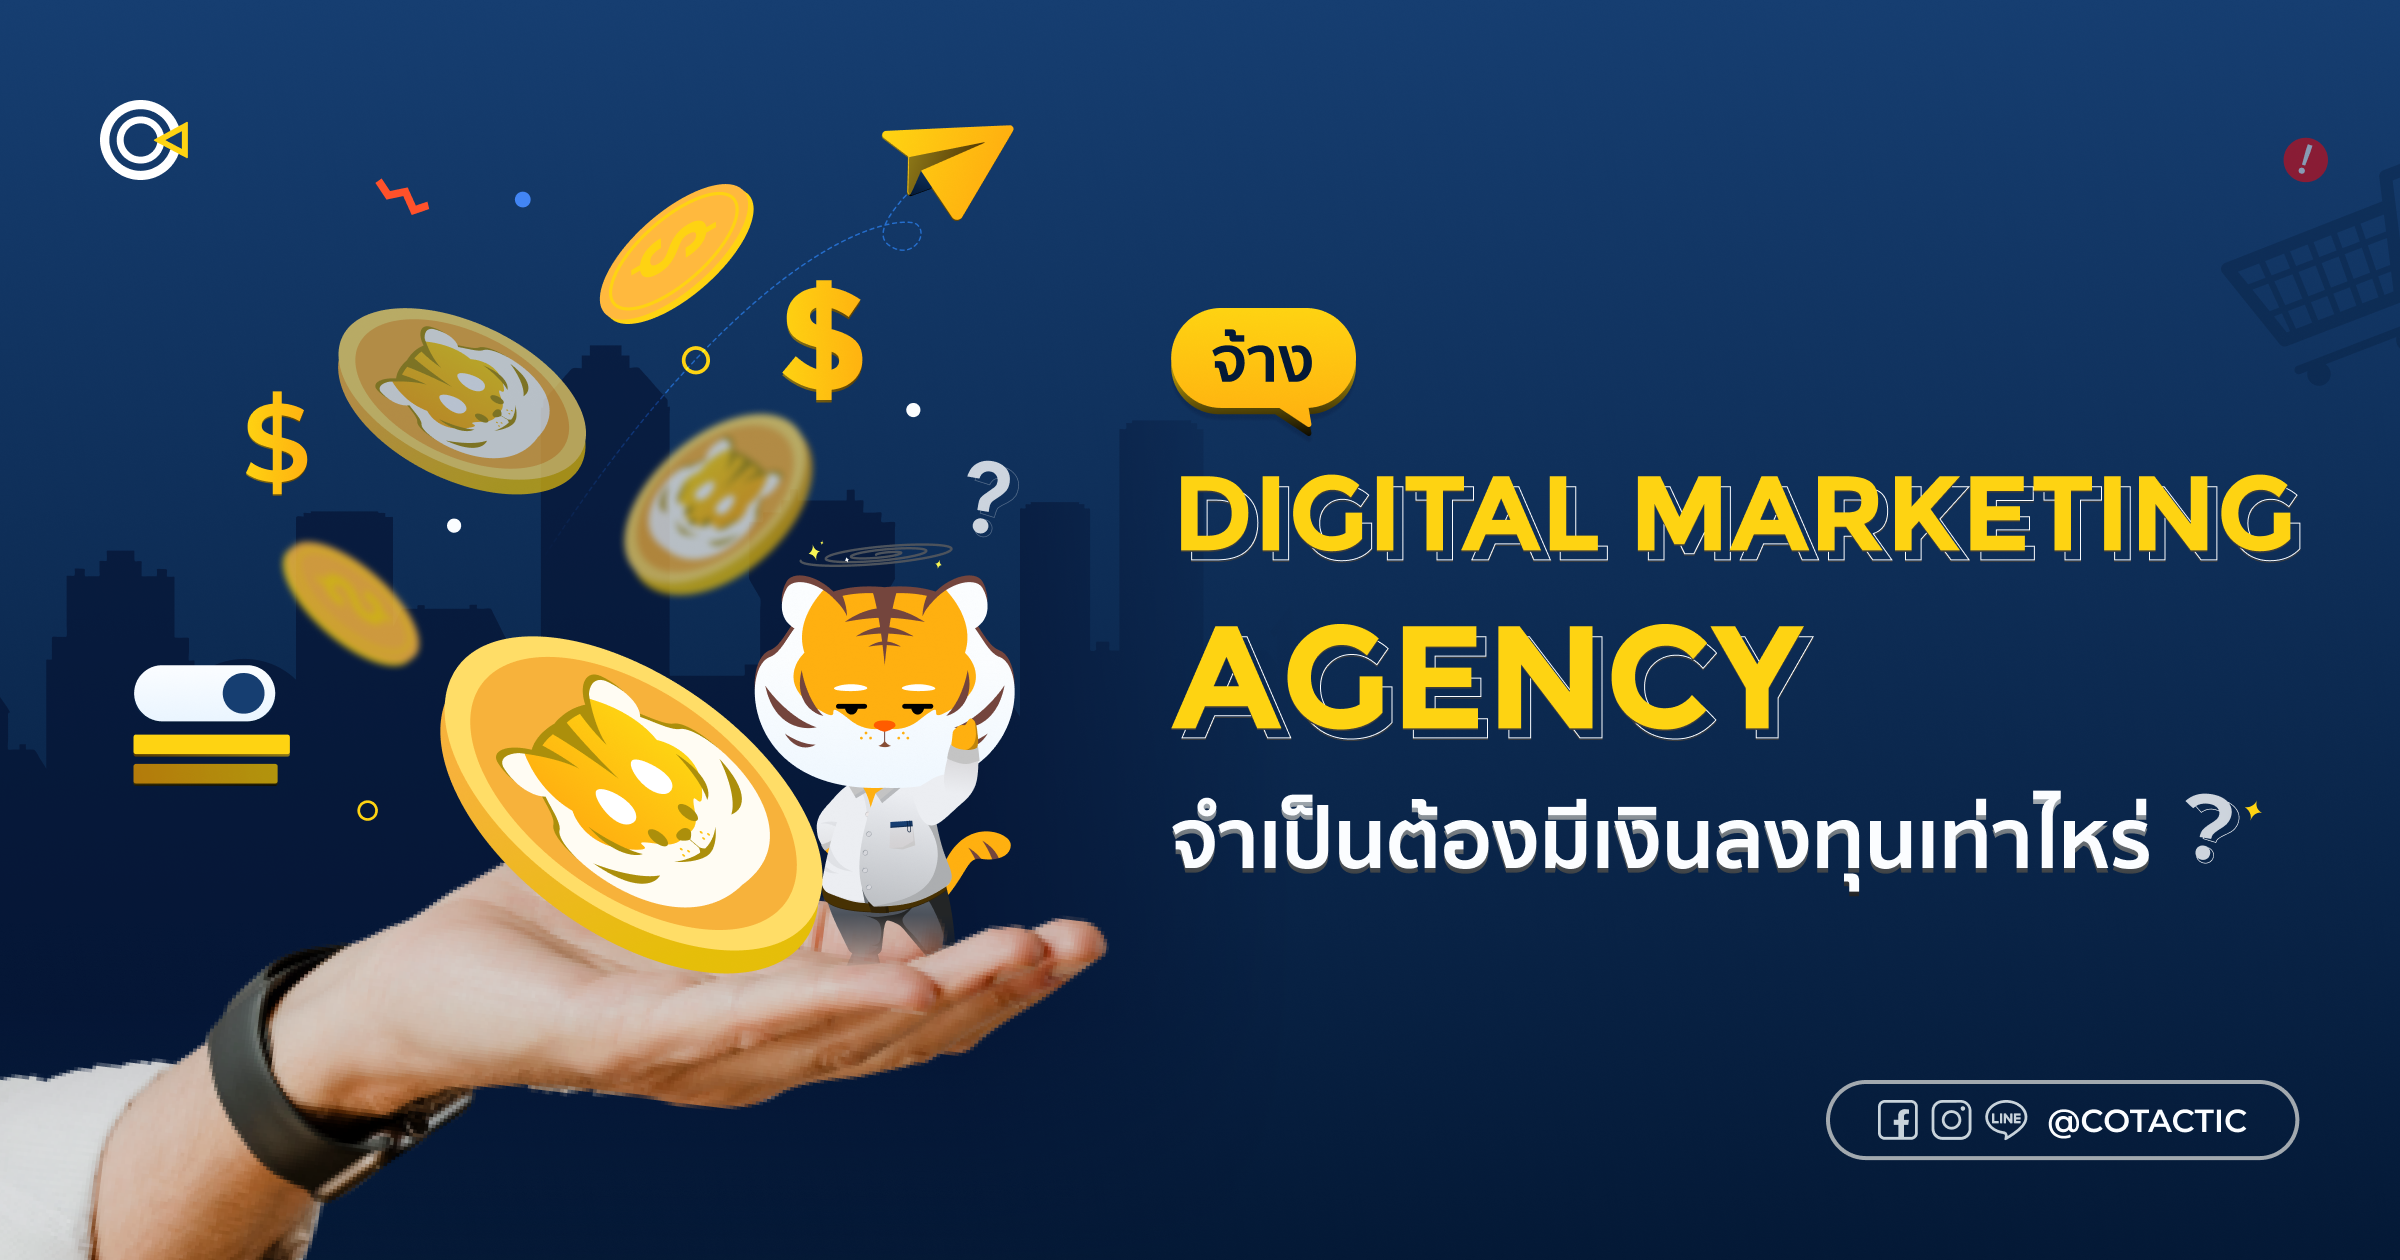 จ้าง Digital Marketing Agency จำเป็นต้องมีเงินลงทุนเท่าไหร่?